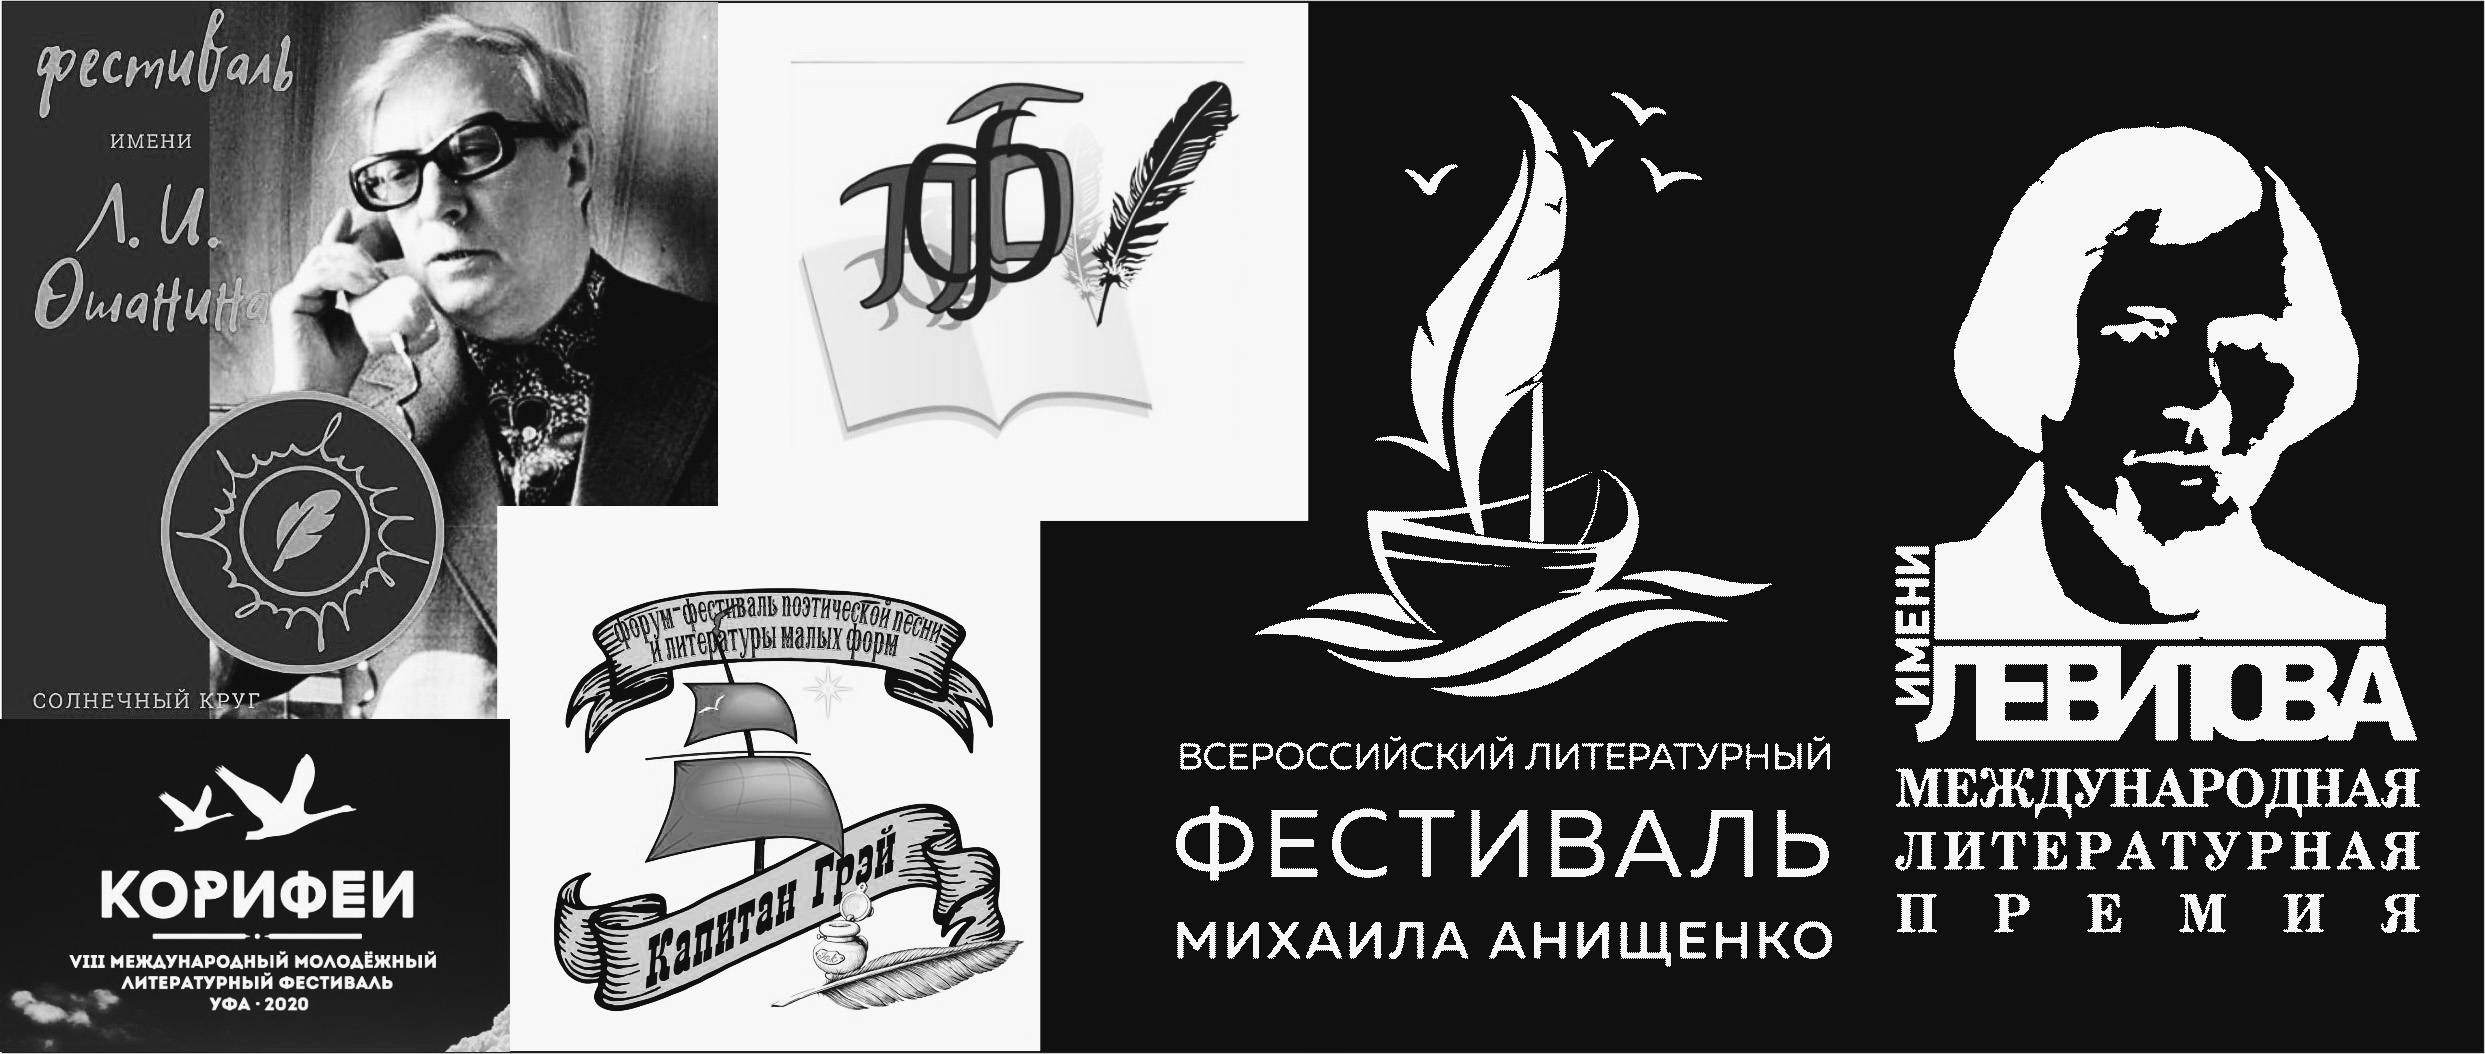 Конкурс на логотип проекта Содружества литературных фестивалей России